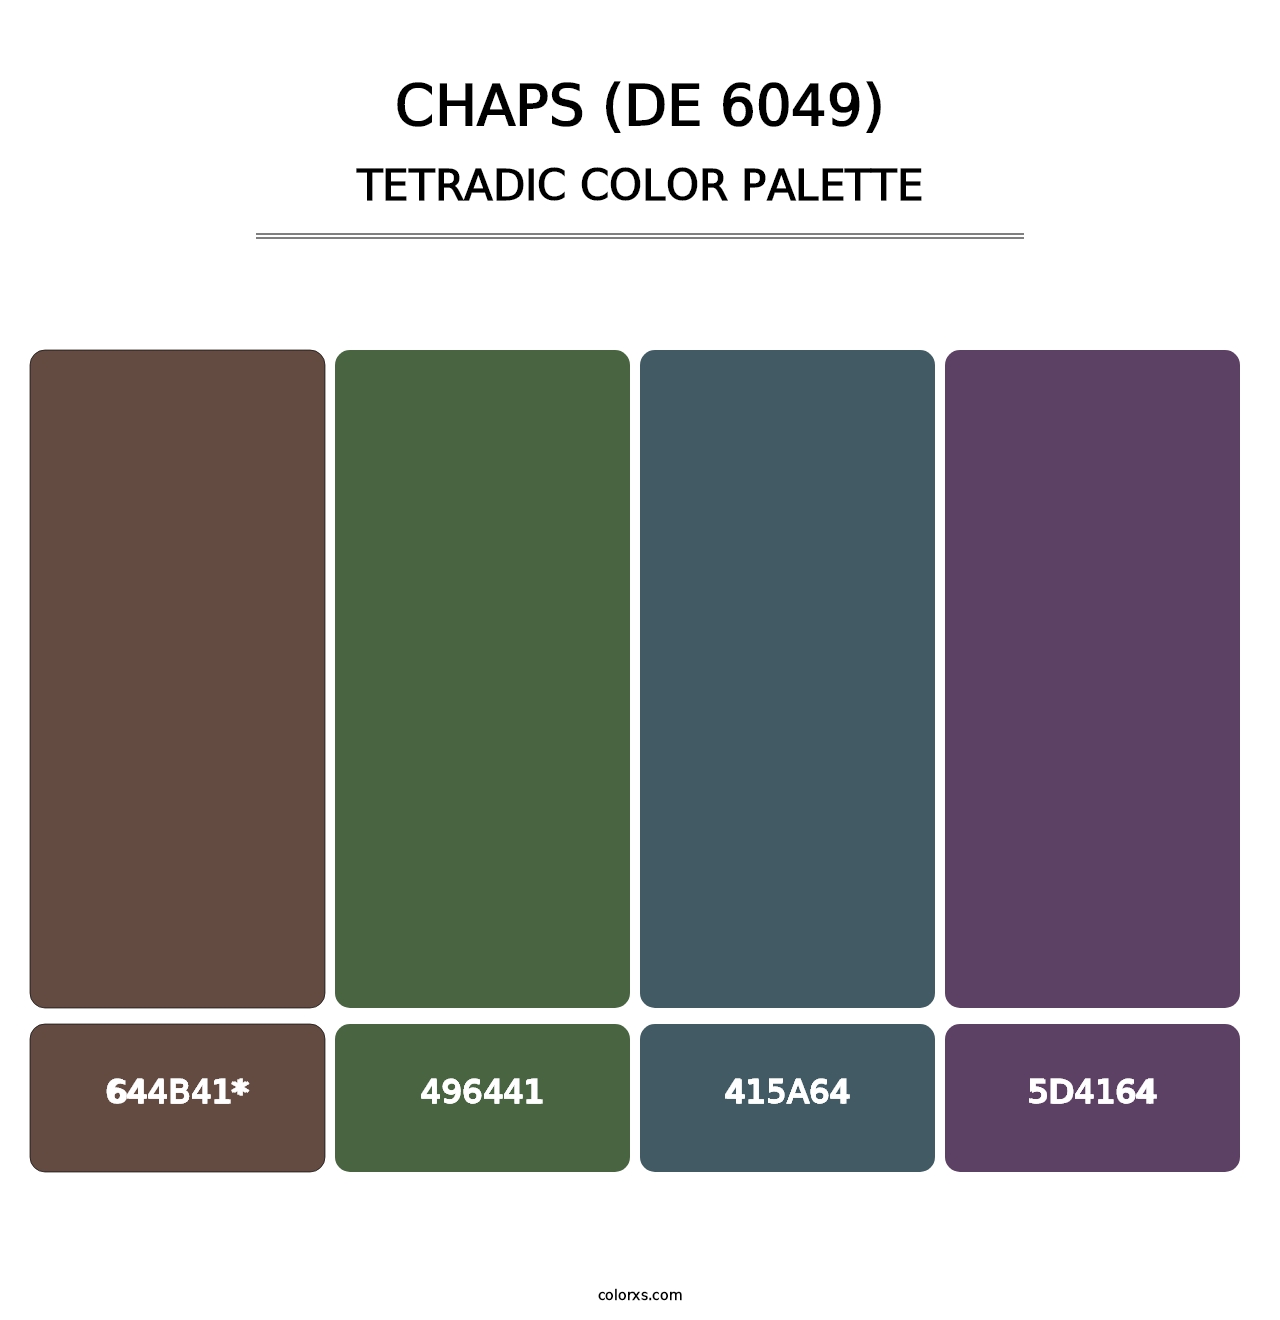 Chaps (DE 6049) - Tetradic Color Palette